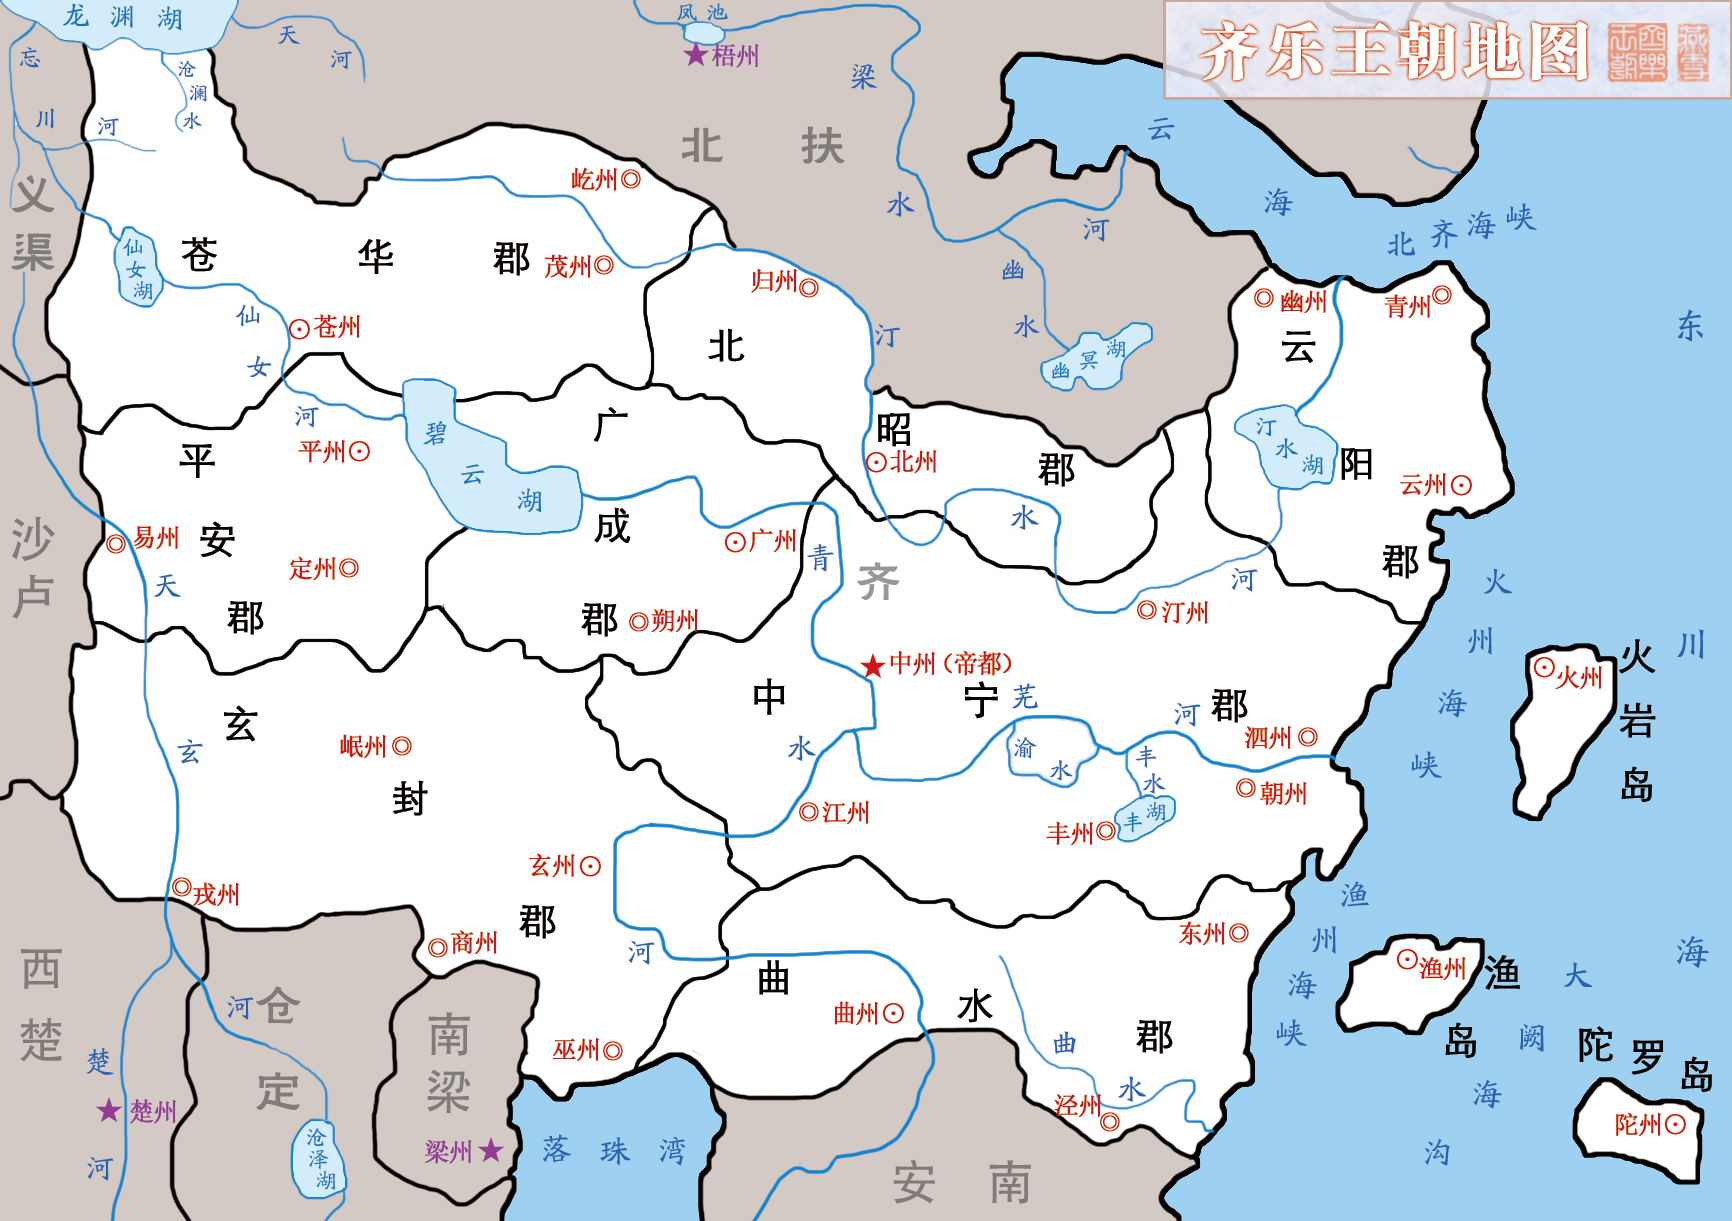 齐乐王朝地图.jpg